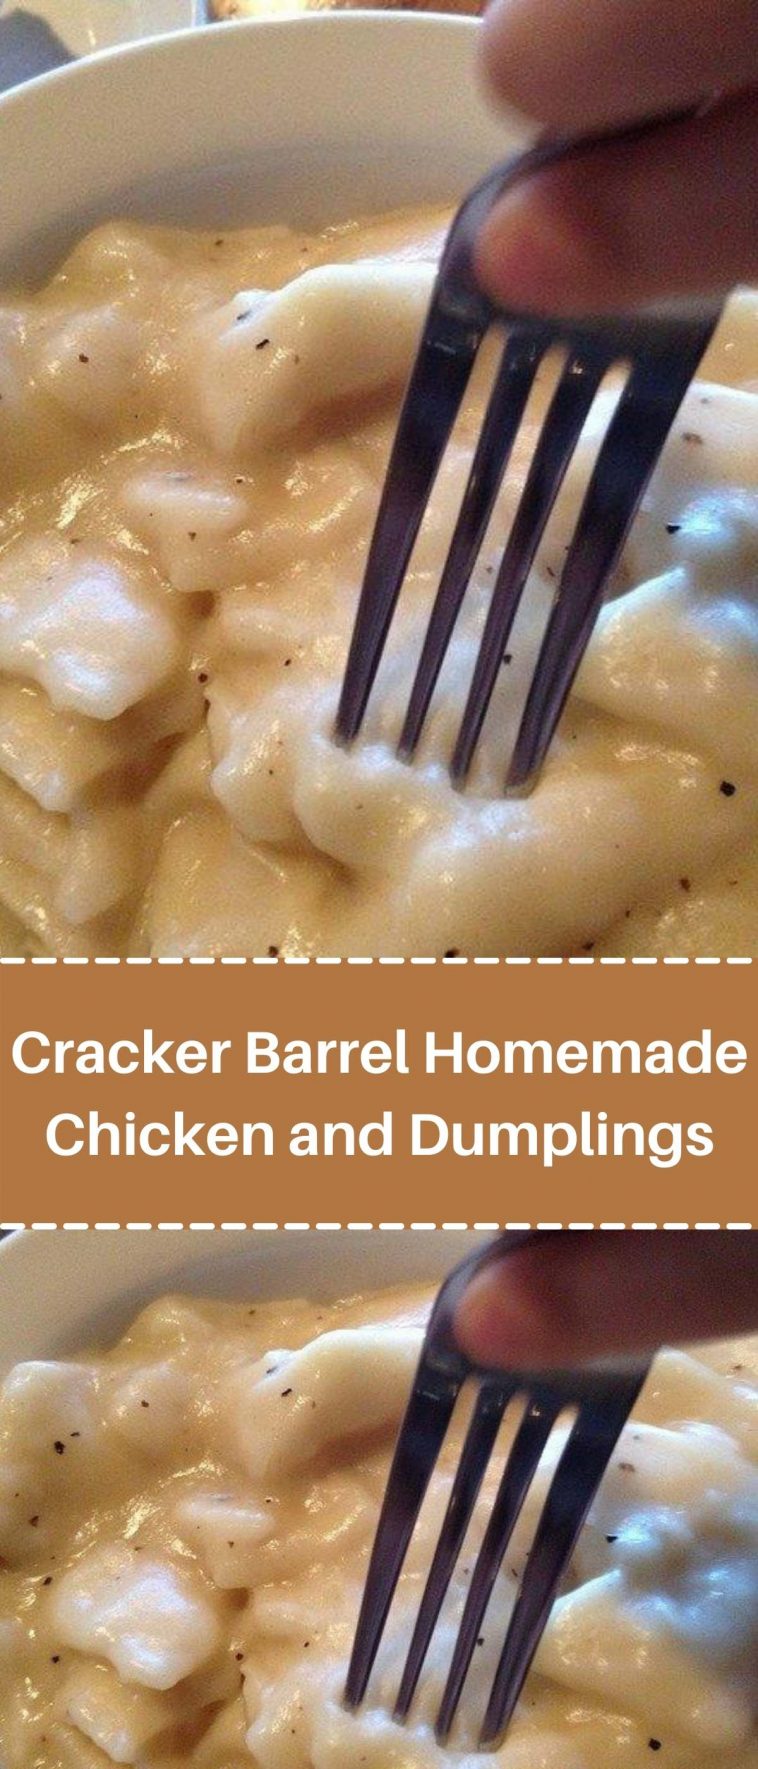 Cracker Barrel Homemade Chicken and Dumplings